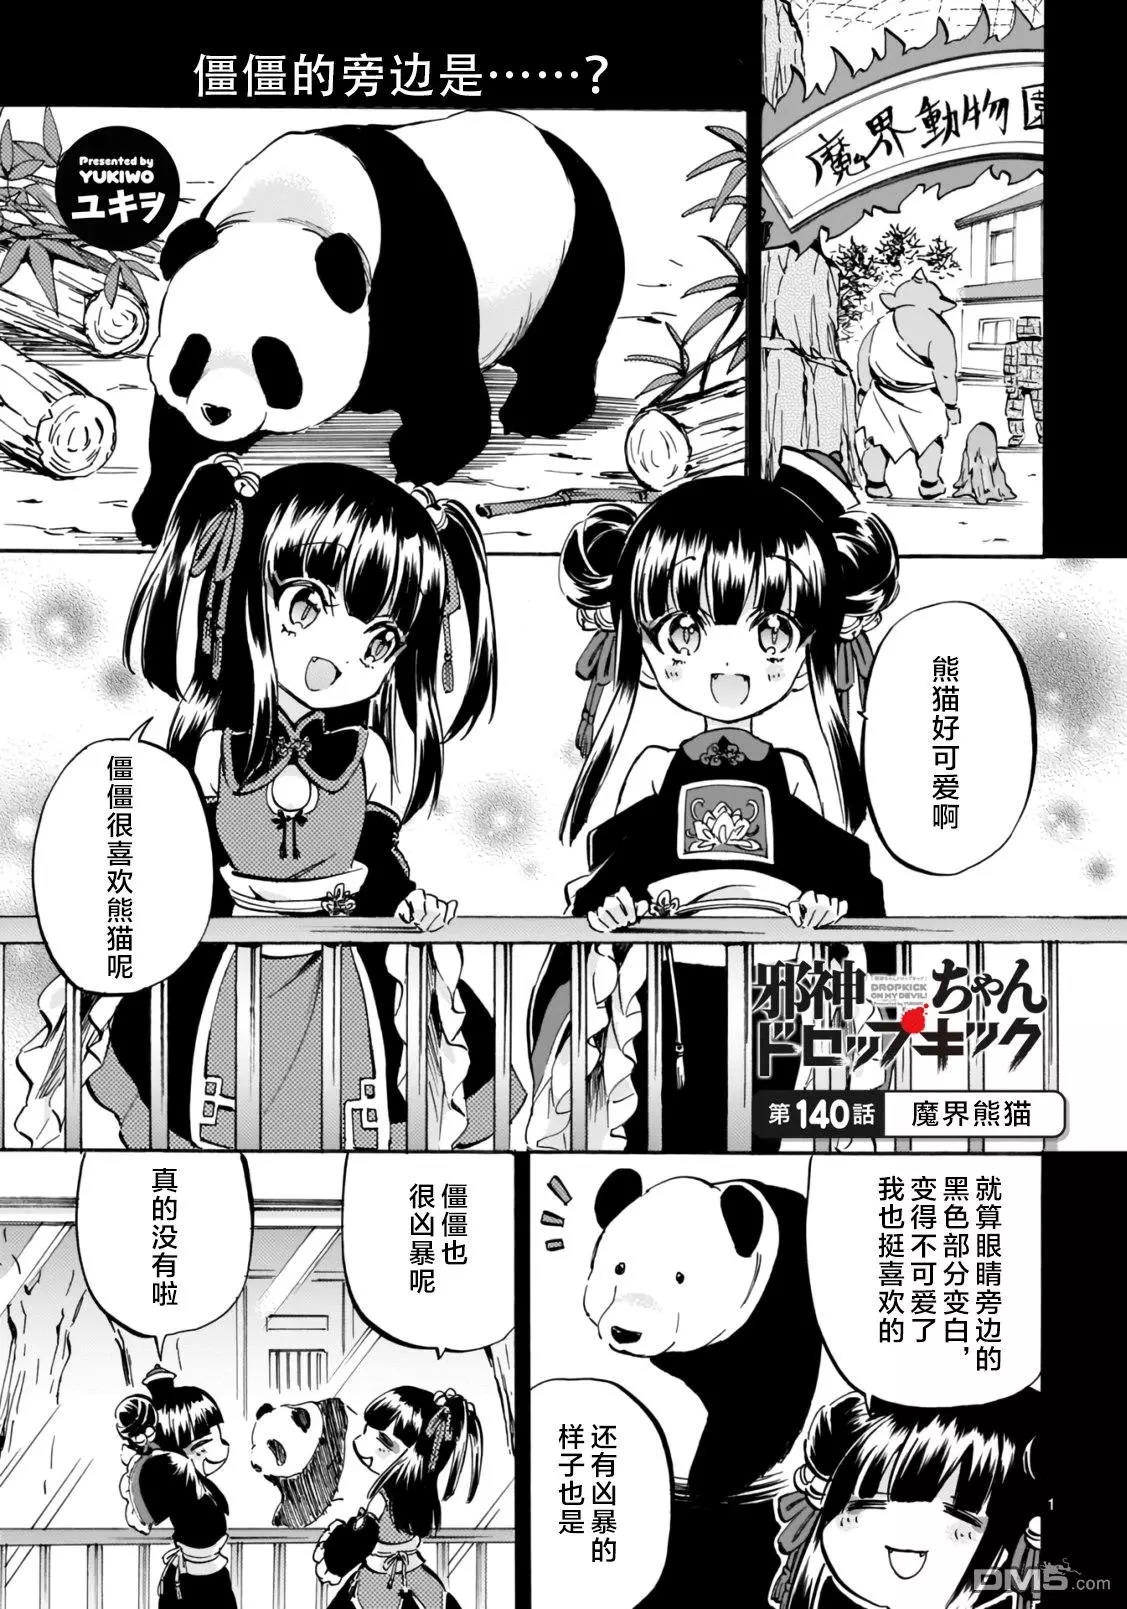 邪神与厨二病少女漫画连载第140话魔界熊猫 漫画db